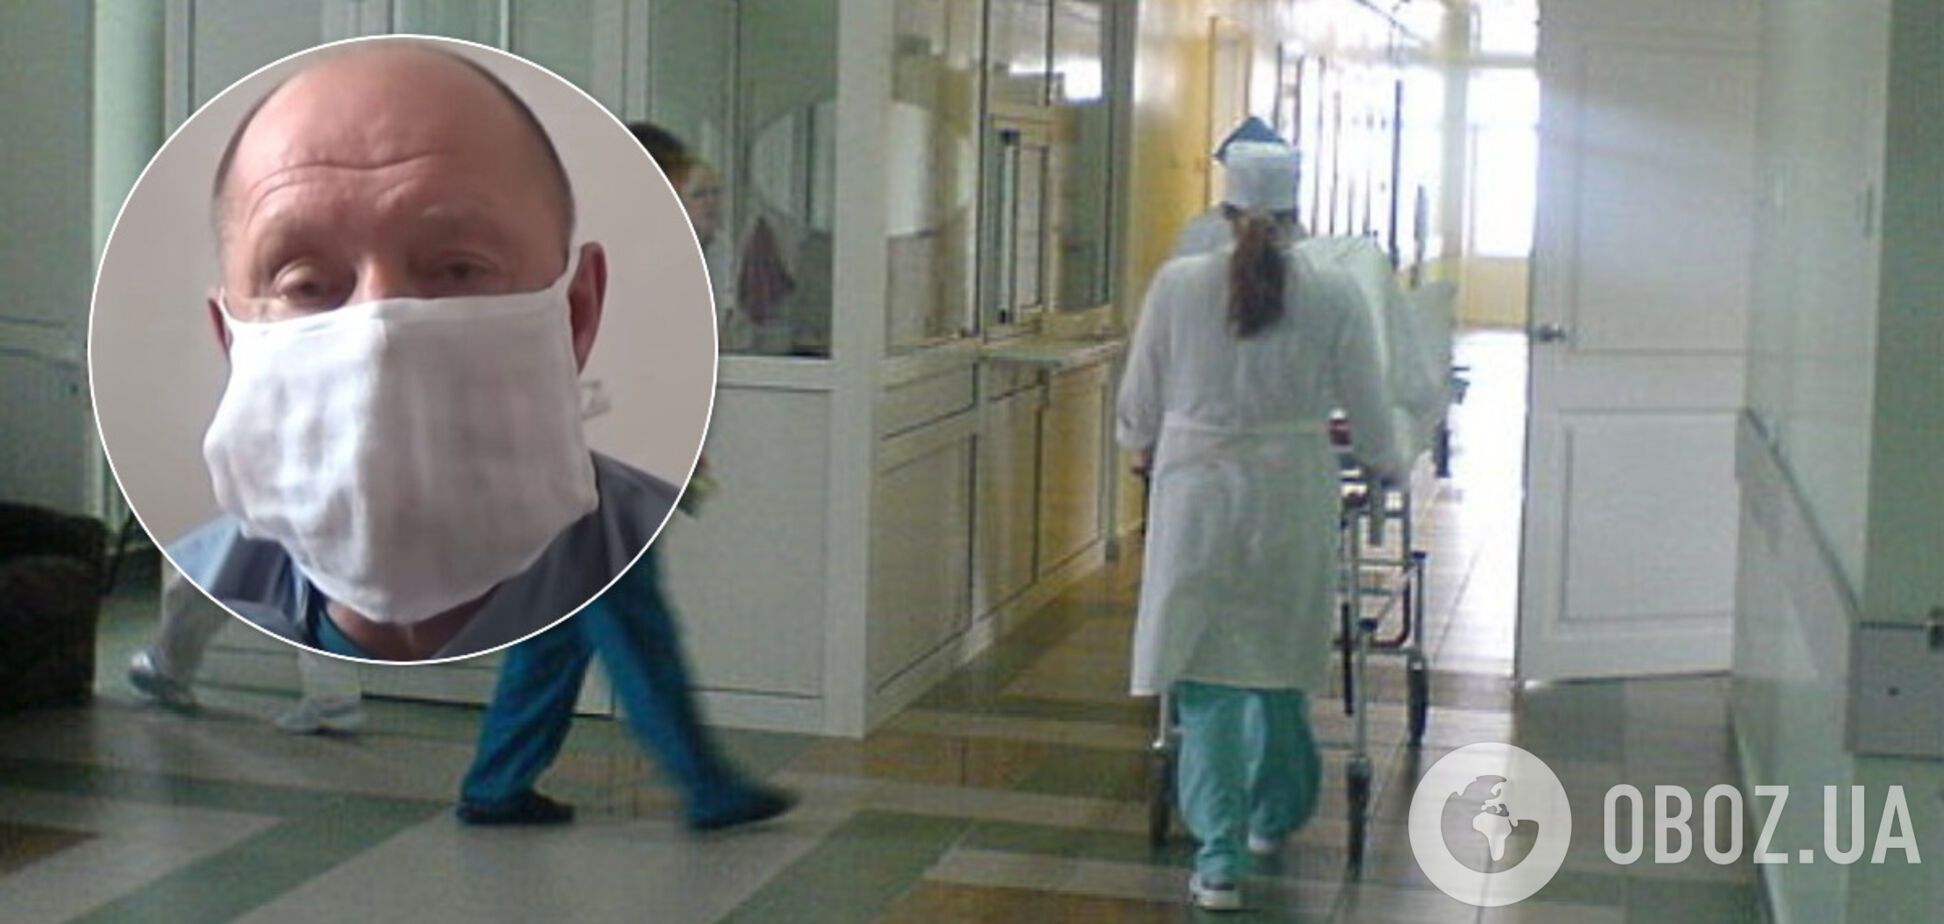 Глава больницы на Сумщине объявил голодовку из-за недофинансирования